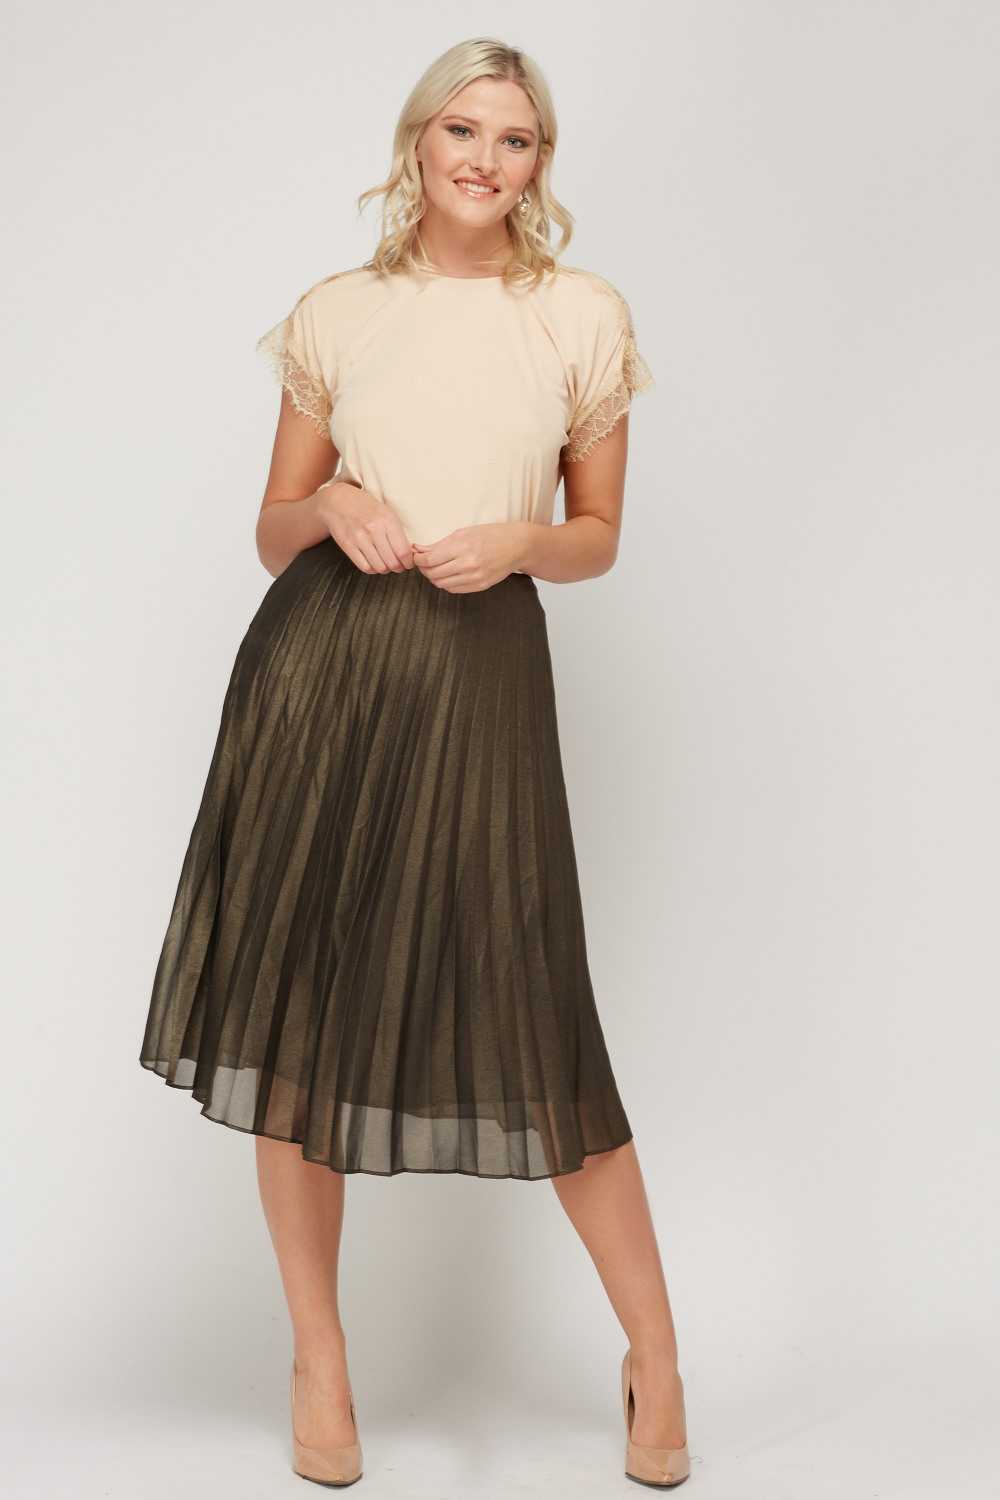 High Waist Pleated Midi Skirt - Just $7